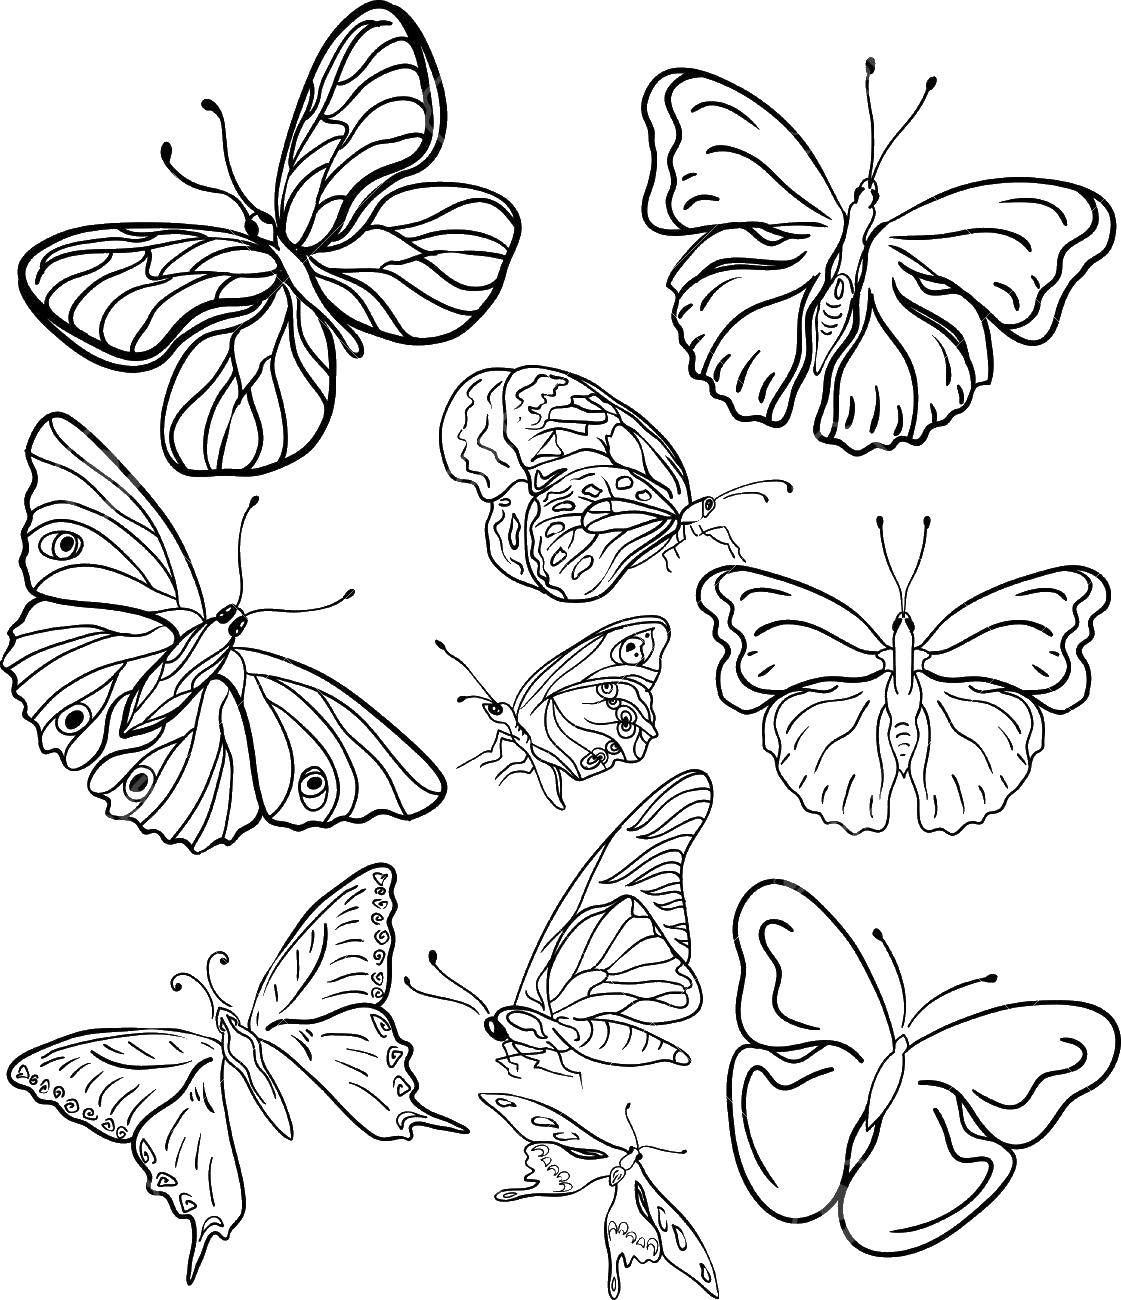 02. Разукрашки красивые бабочки